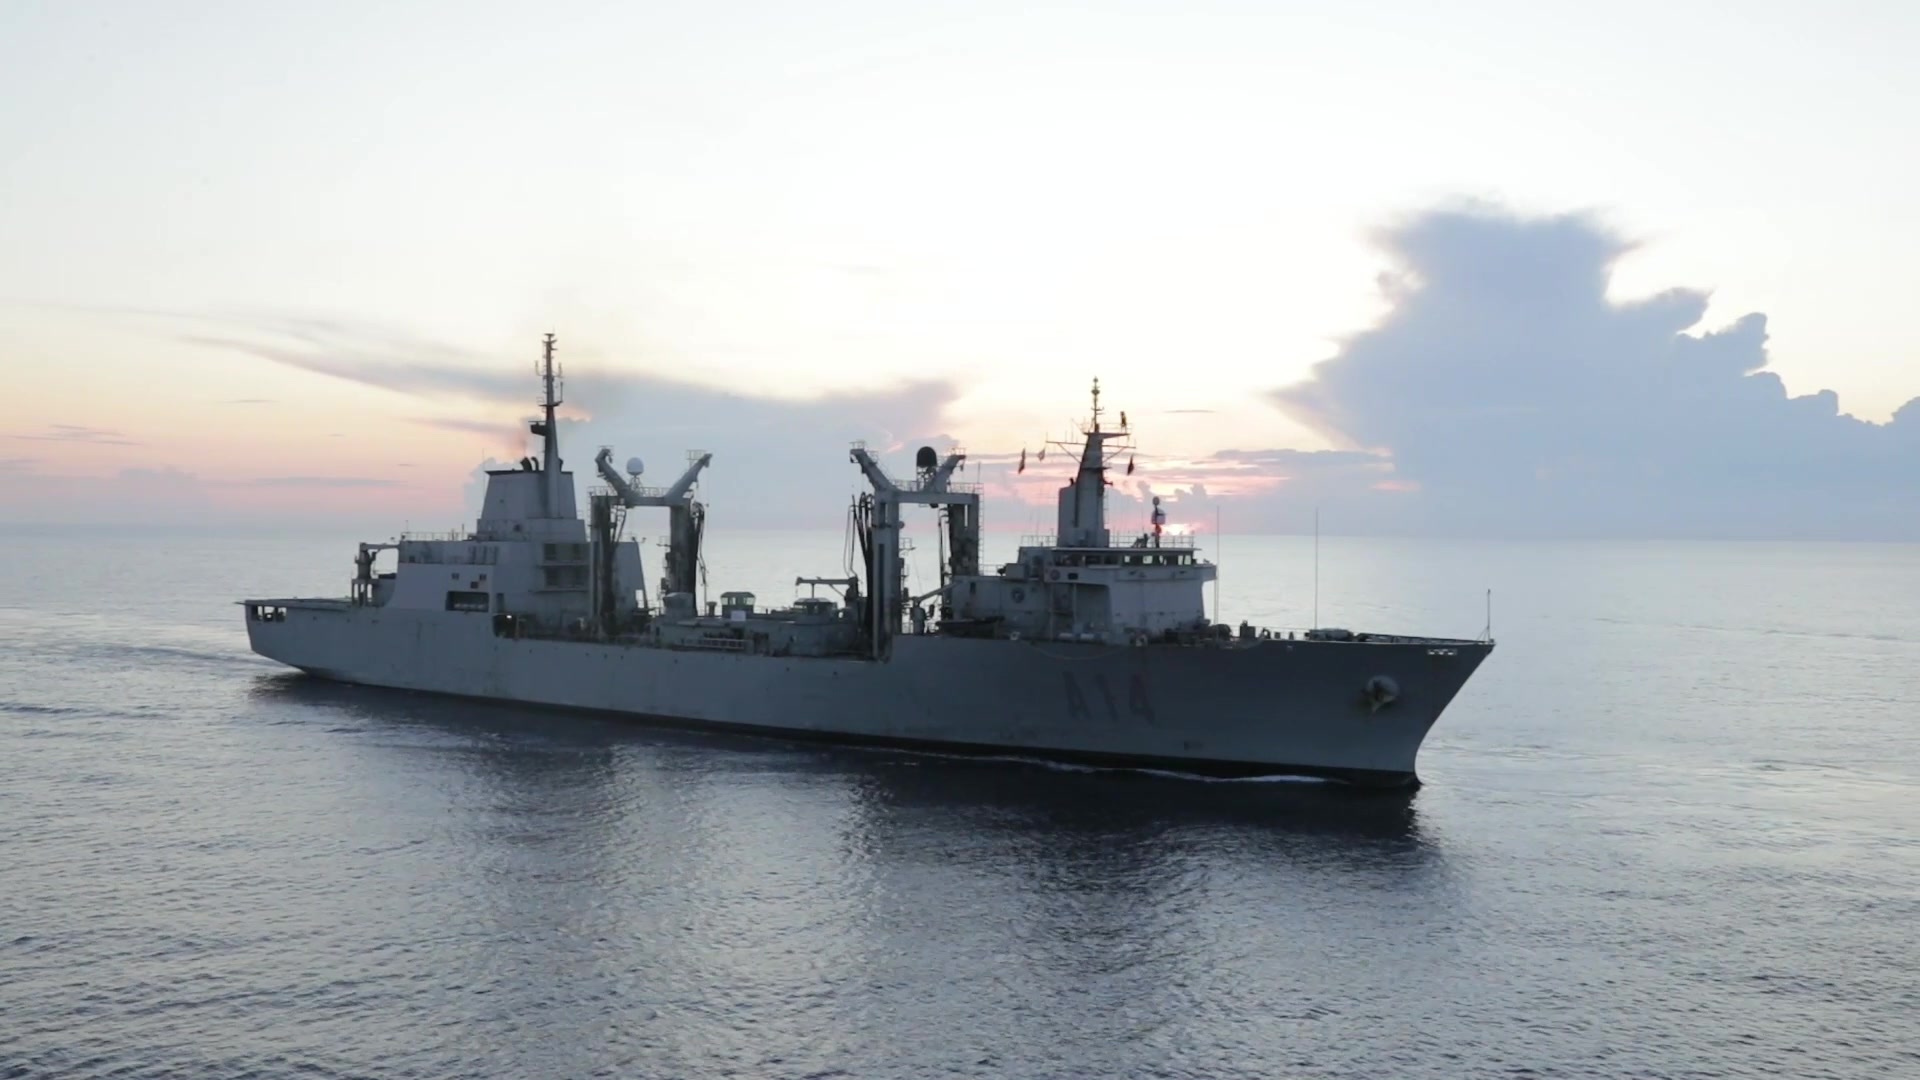 HMS Albion • Operation Sea Guardian • Mediterranean Sea • Nov 2020